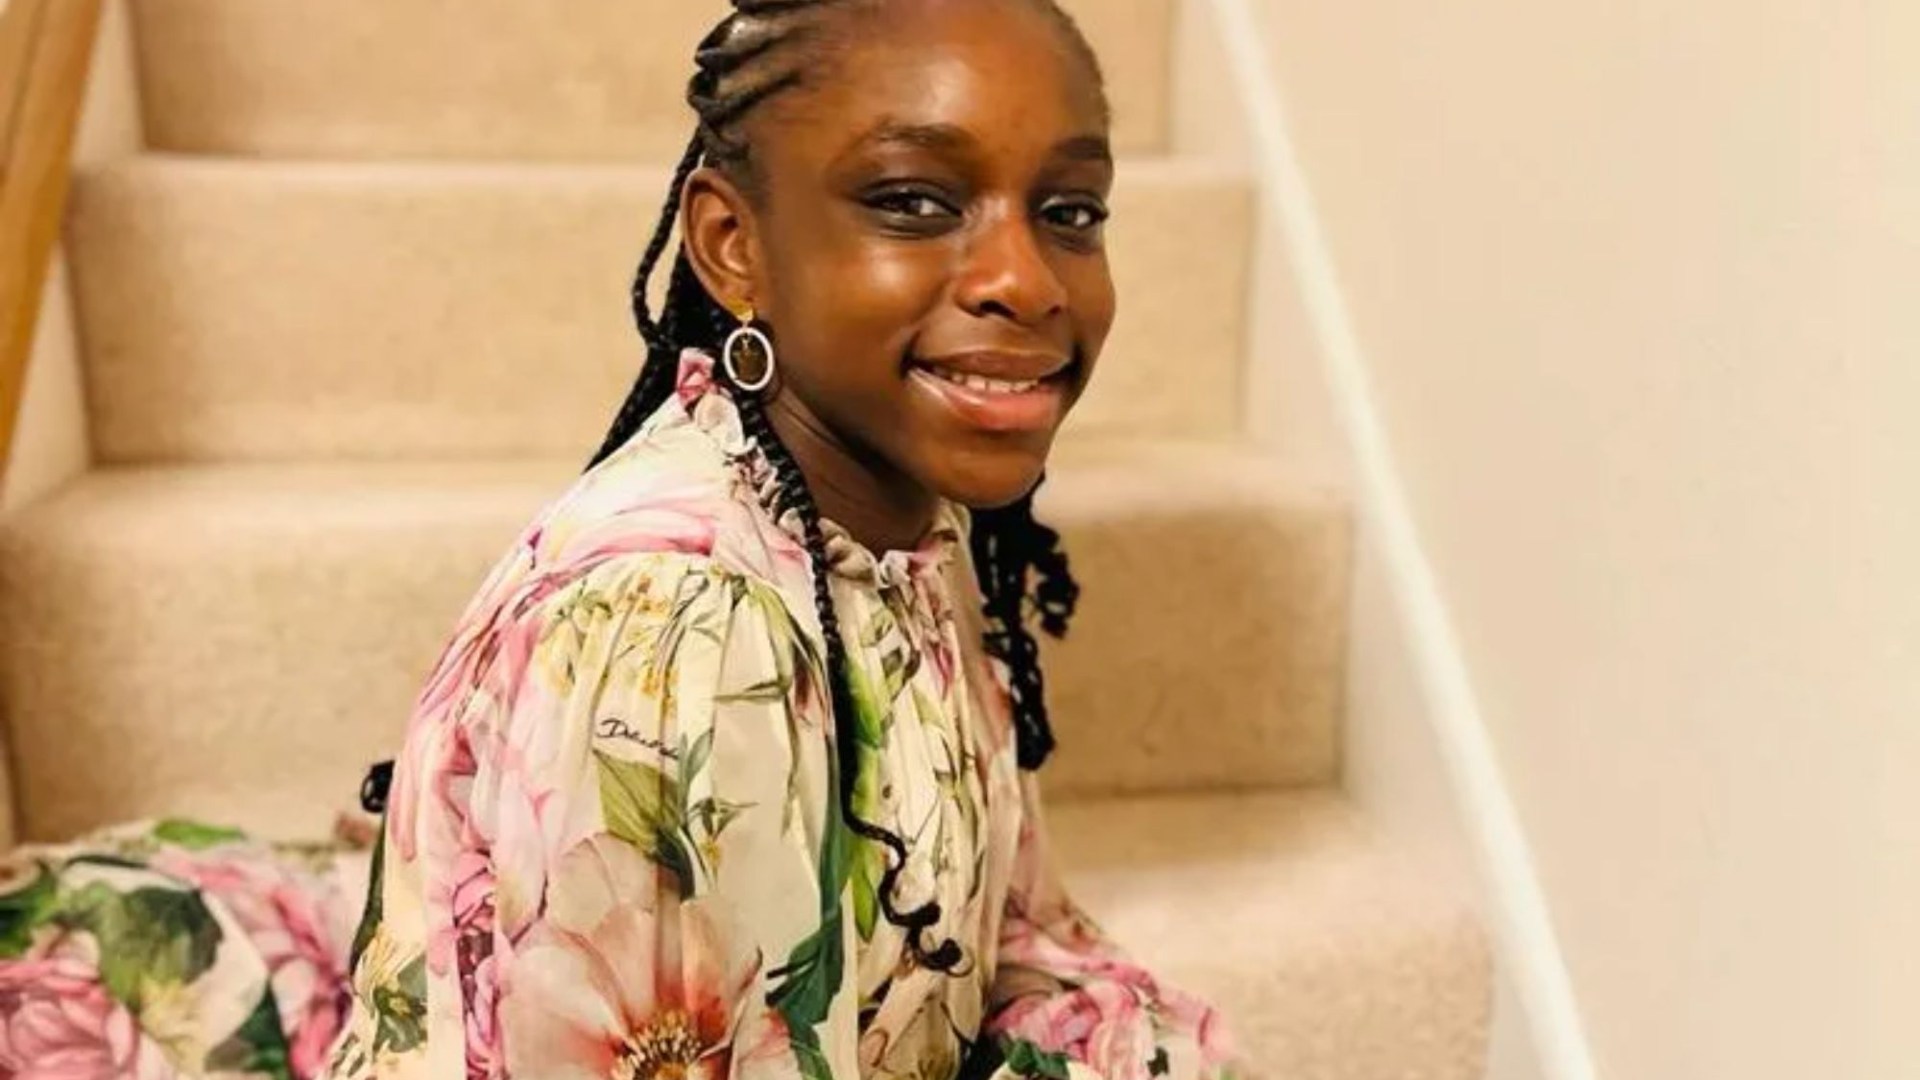 Una niña “brillante” de 12 años murió en la escuela mientras los momentos finales “frenéticos” eran revelados por maestros desconsolados